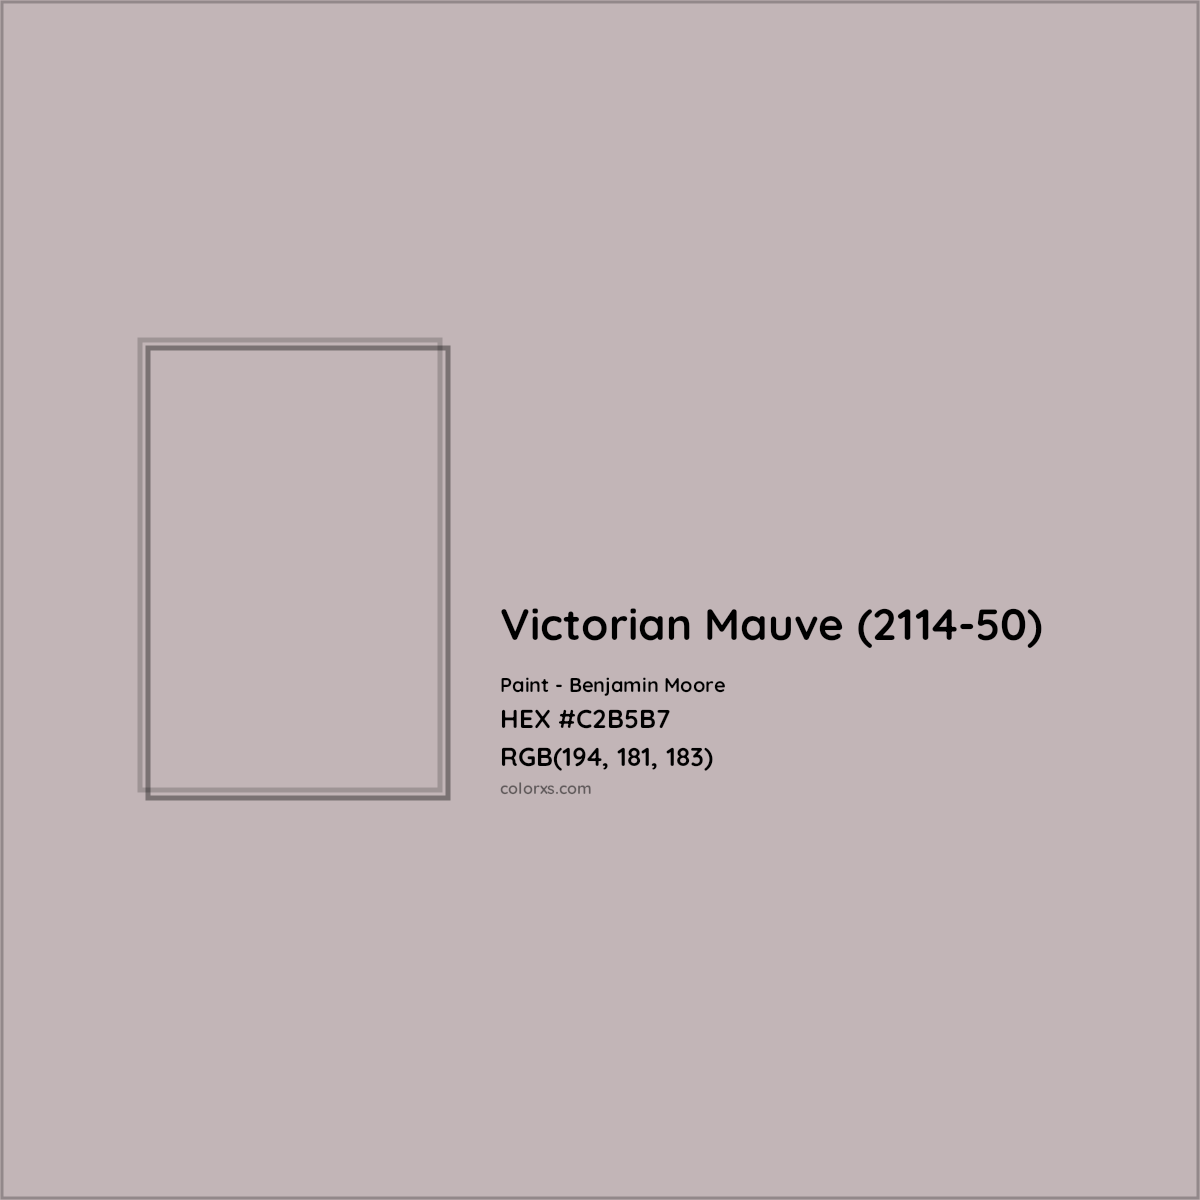 HEX #C2B5B7 Victorian Mauve (2114-50) Paint Benjamin Moore - Color Code